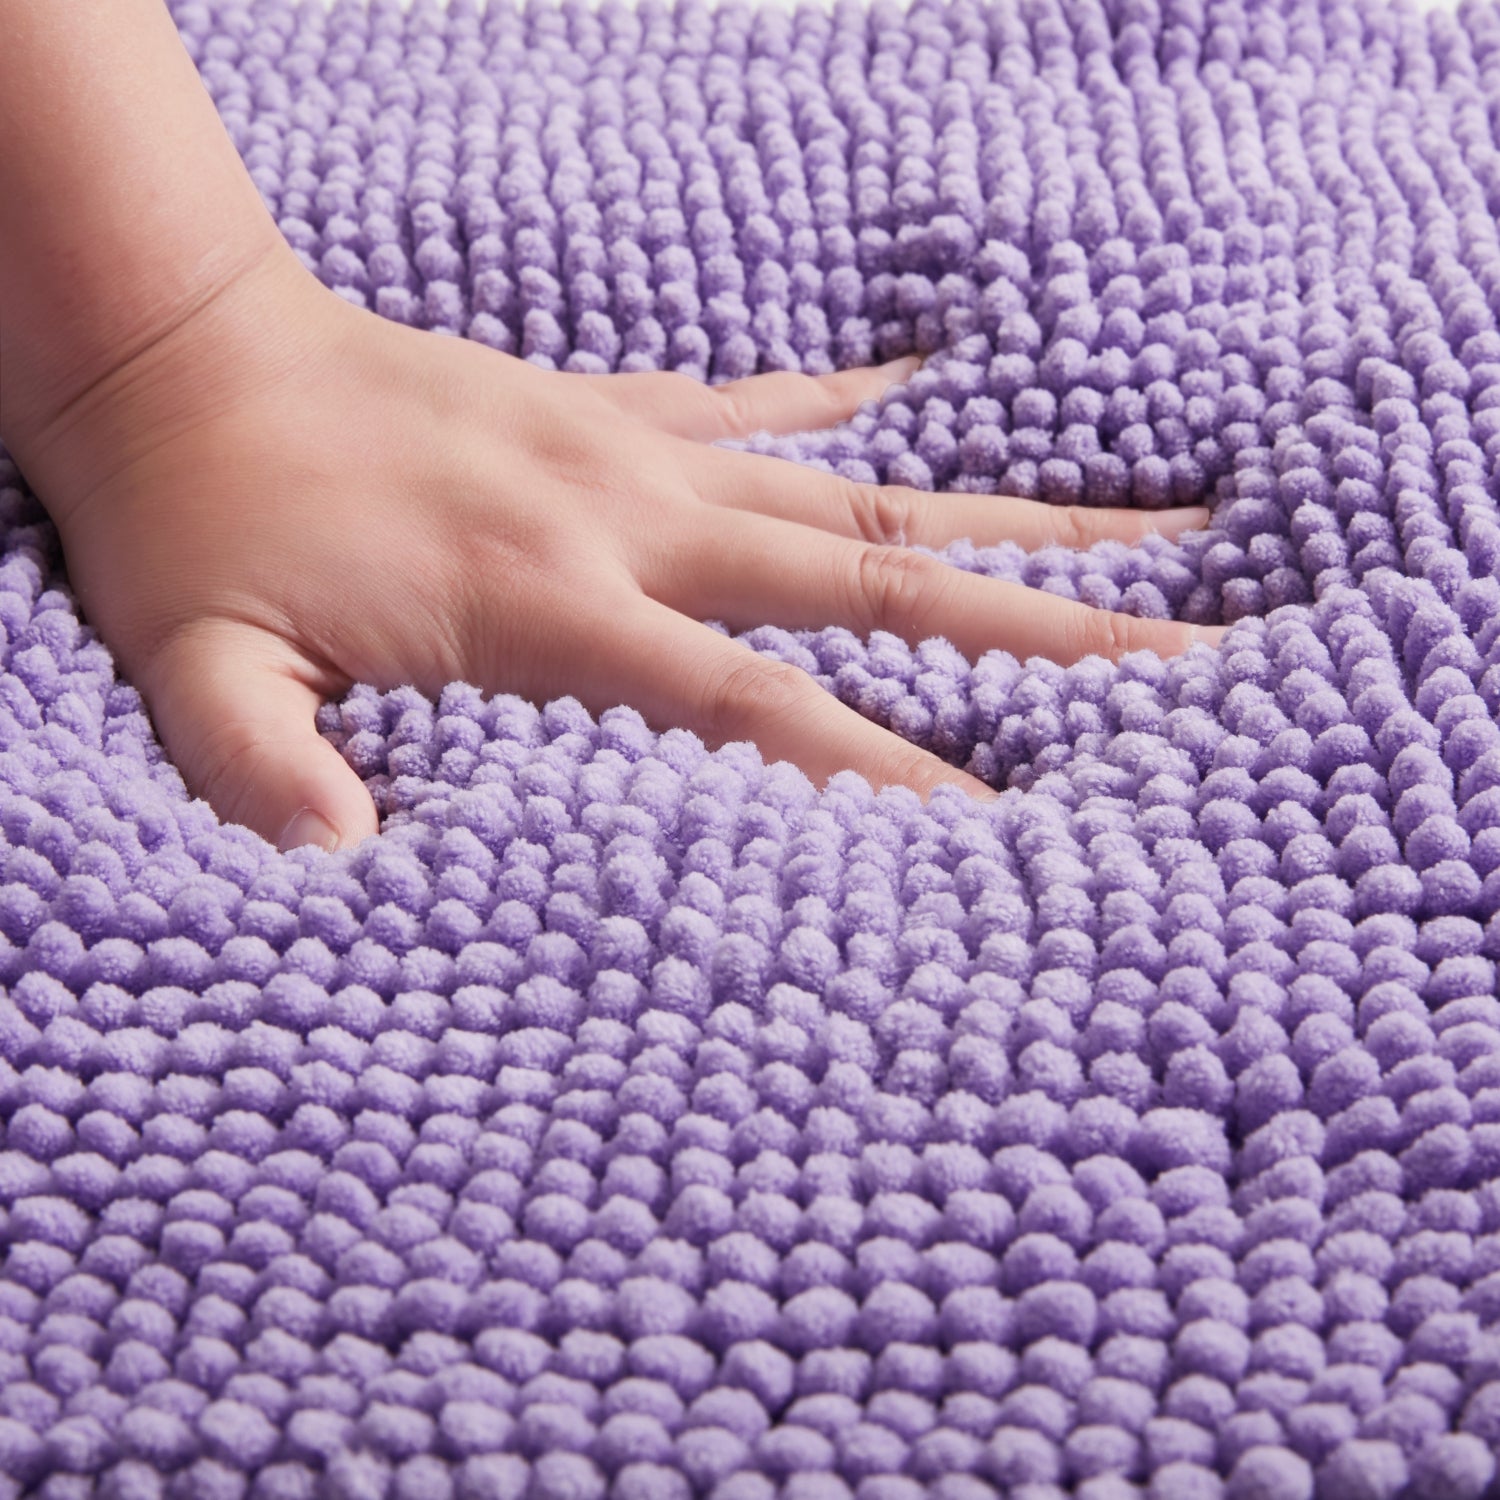 Purple Chenille Pile Bath Mat